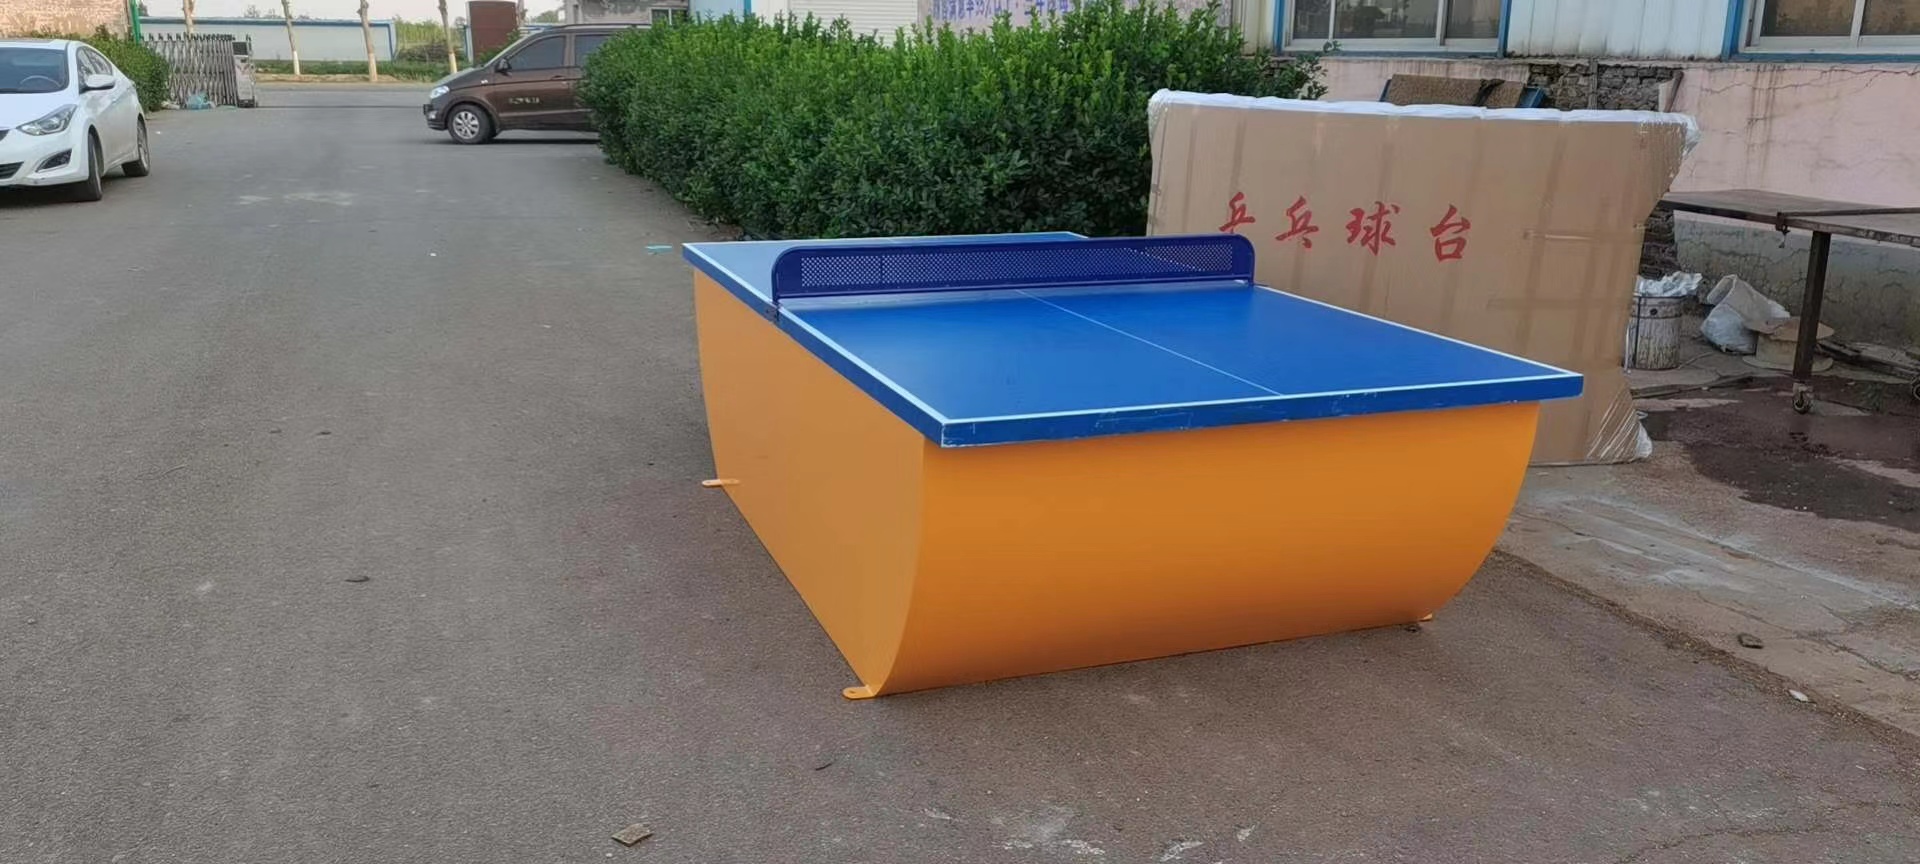 广州乒乓球台生产厂家 使用说明介绍